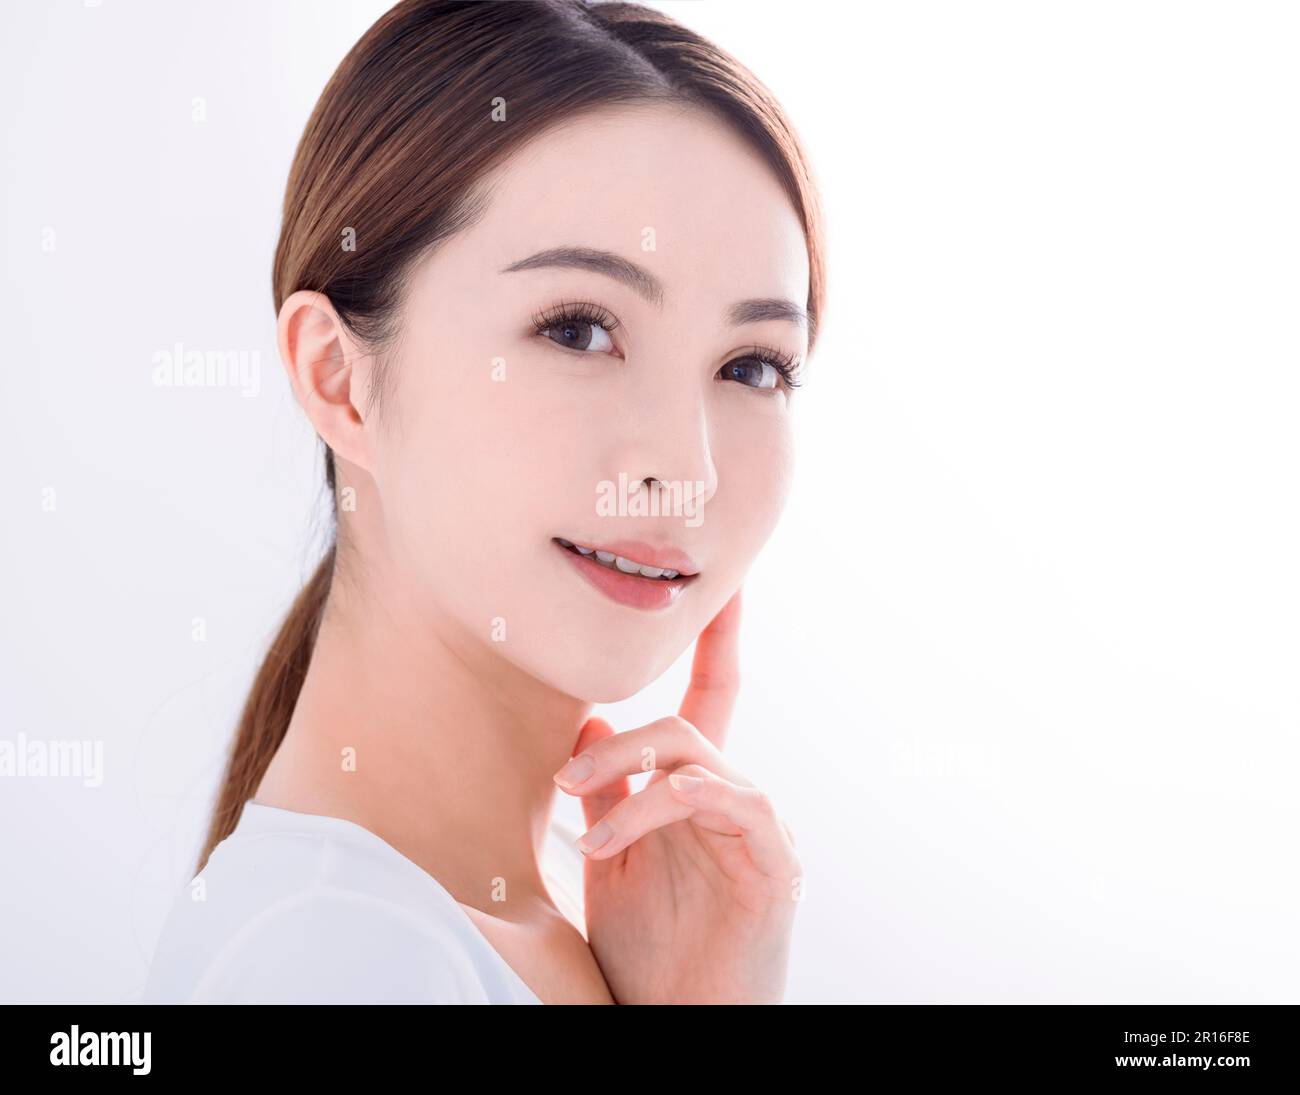 Schöne junge Frau mit sauberer, frischer Haut auf weißem Hintergrund Stockfoto